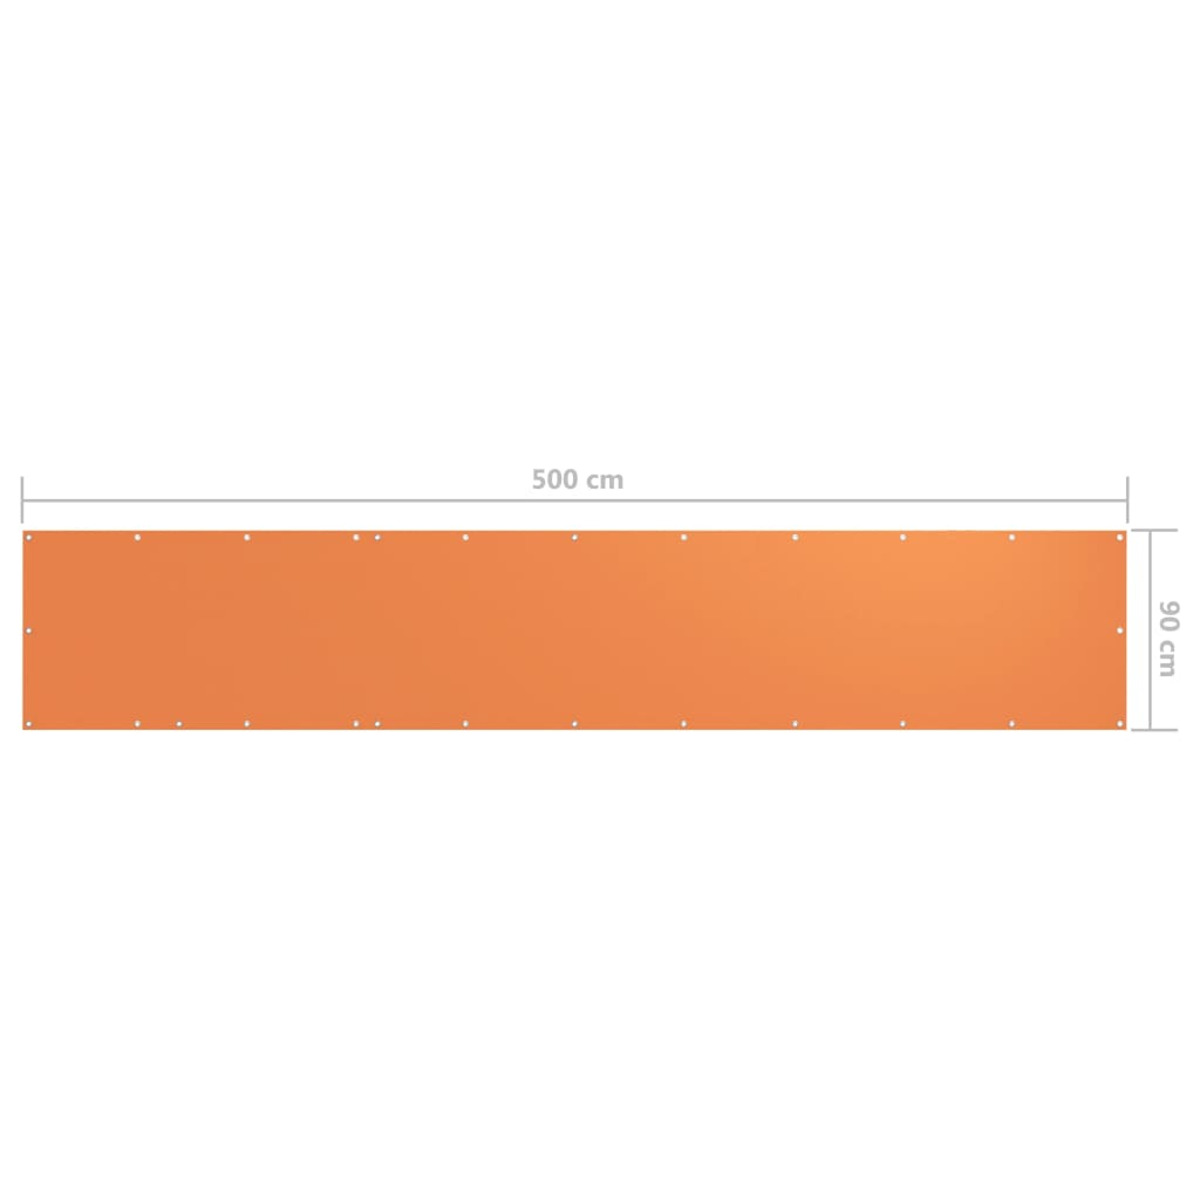 VIDAXL Sichtschutz, Orange 135050